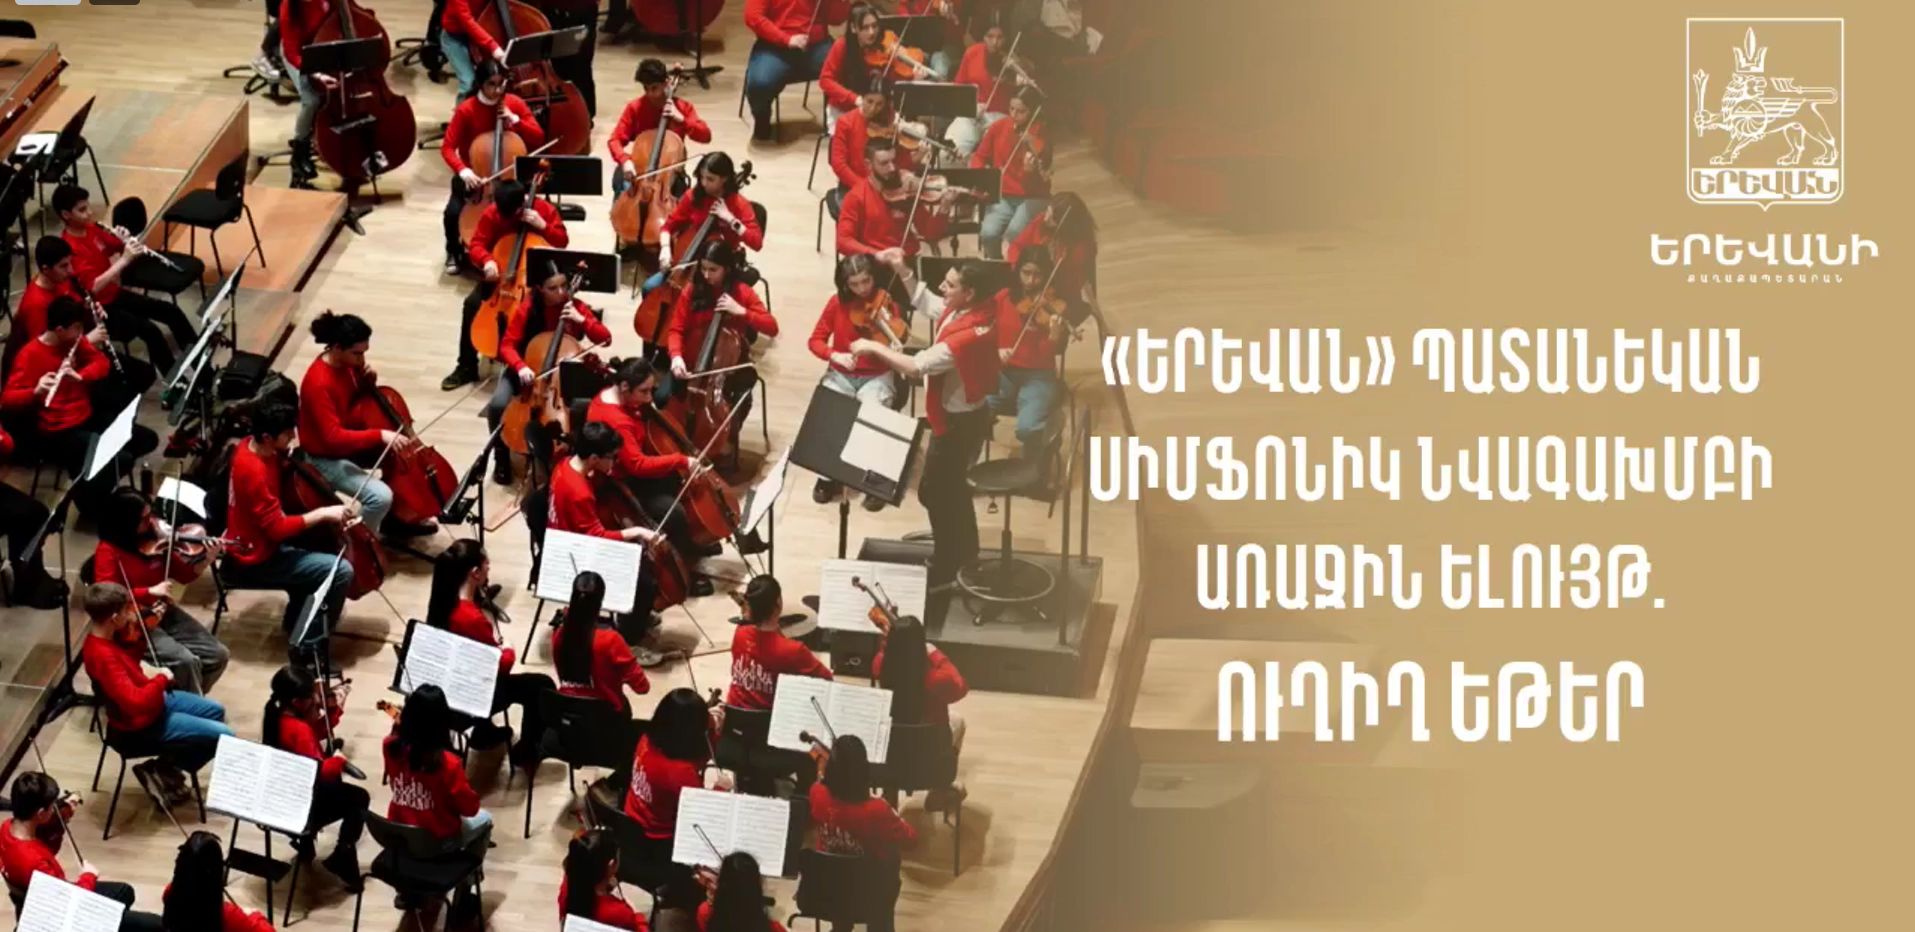 «Երևան» պետական սիմֆոնիկ նվագախմբի համերգը՝ ուղիղ